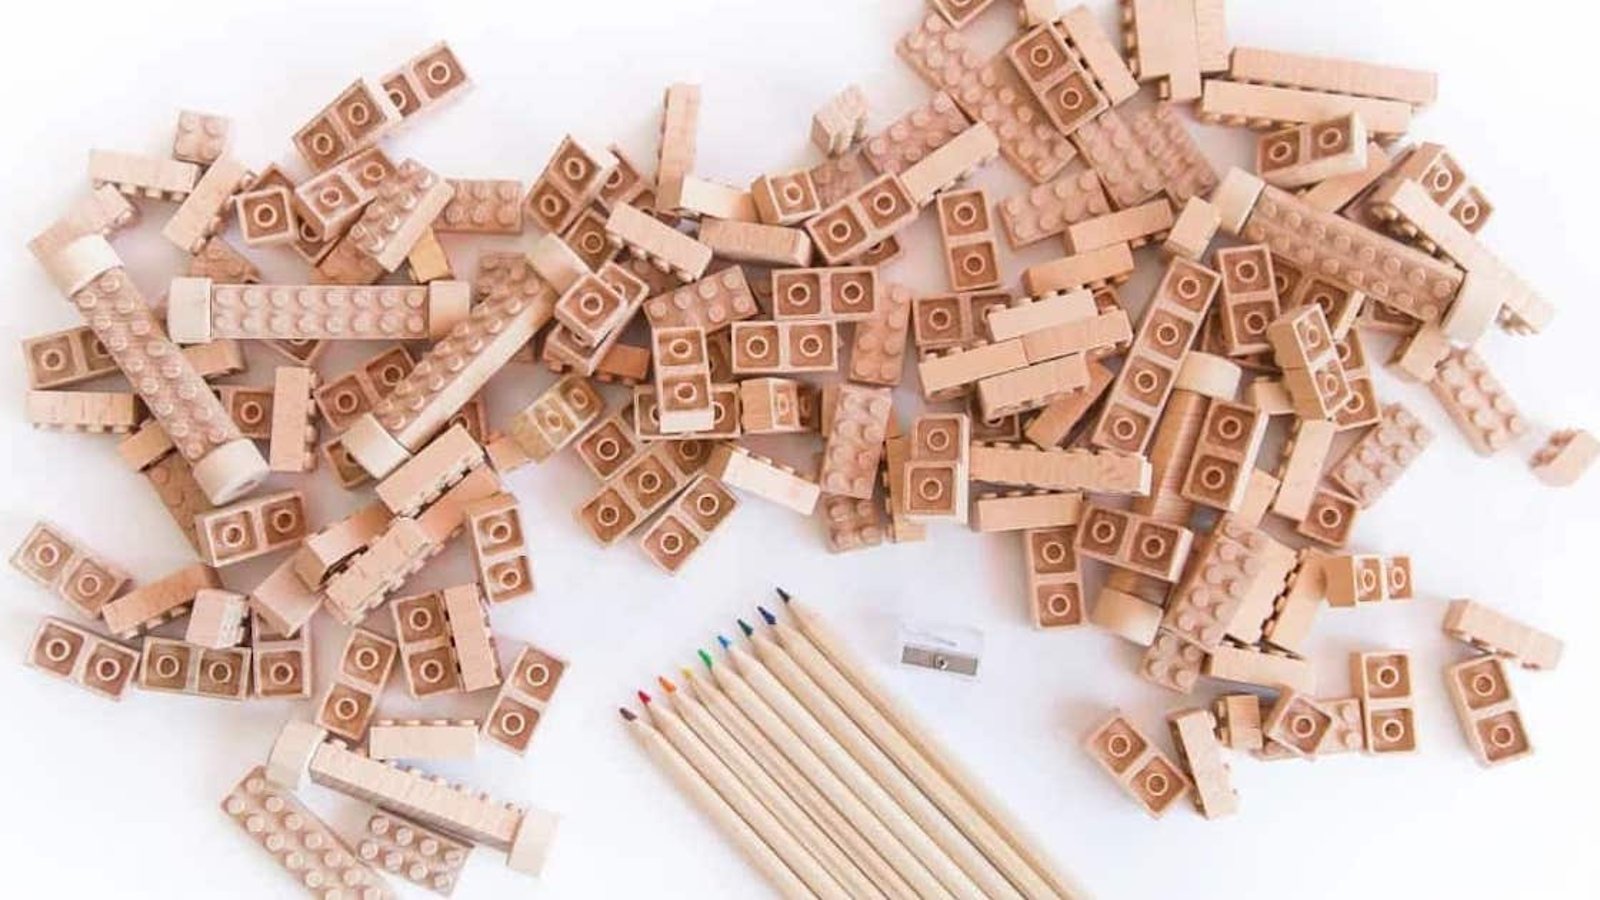 Une idée écolo: les “legos” en bambou